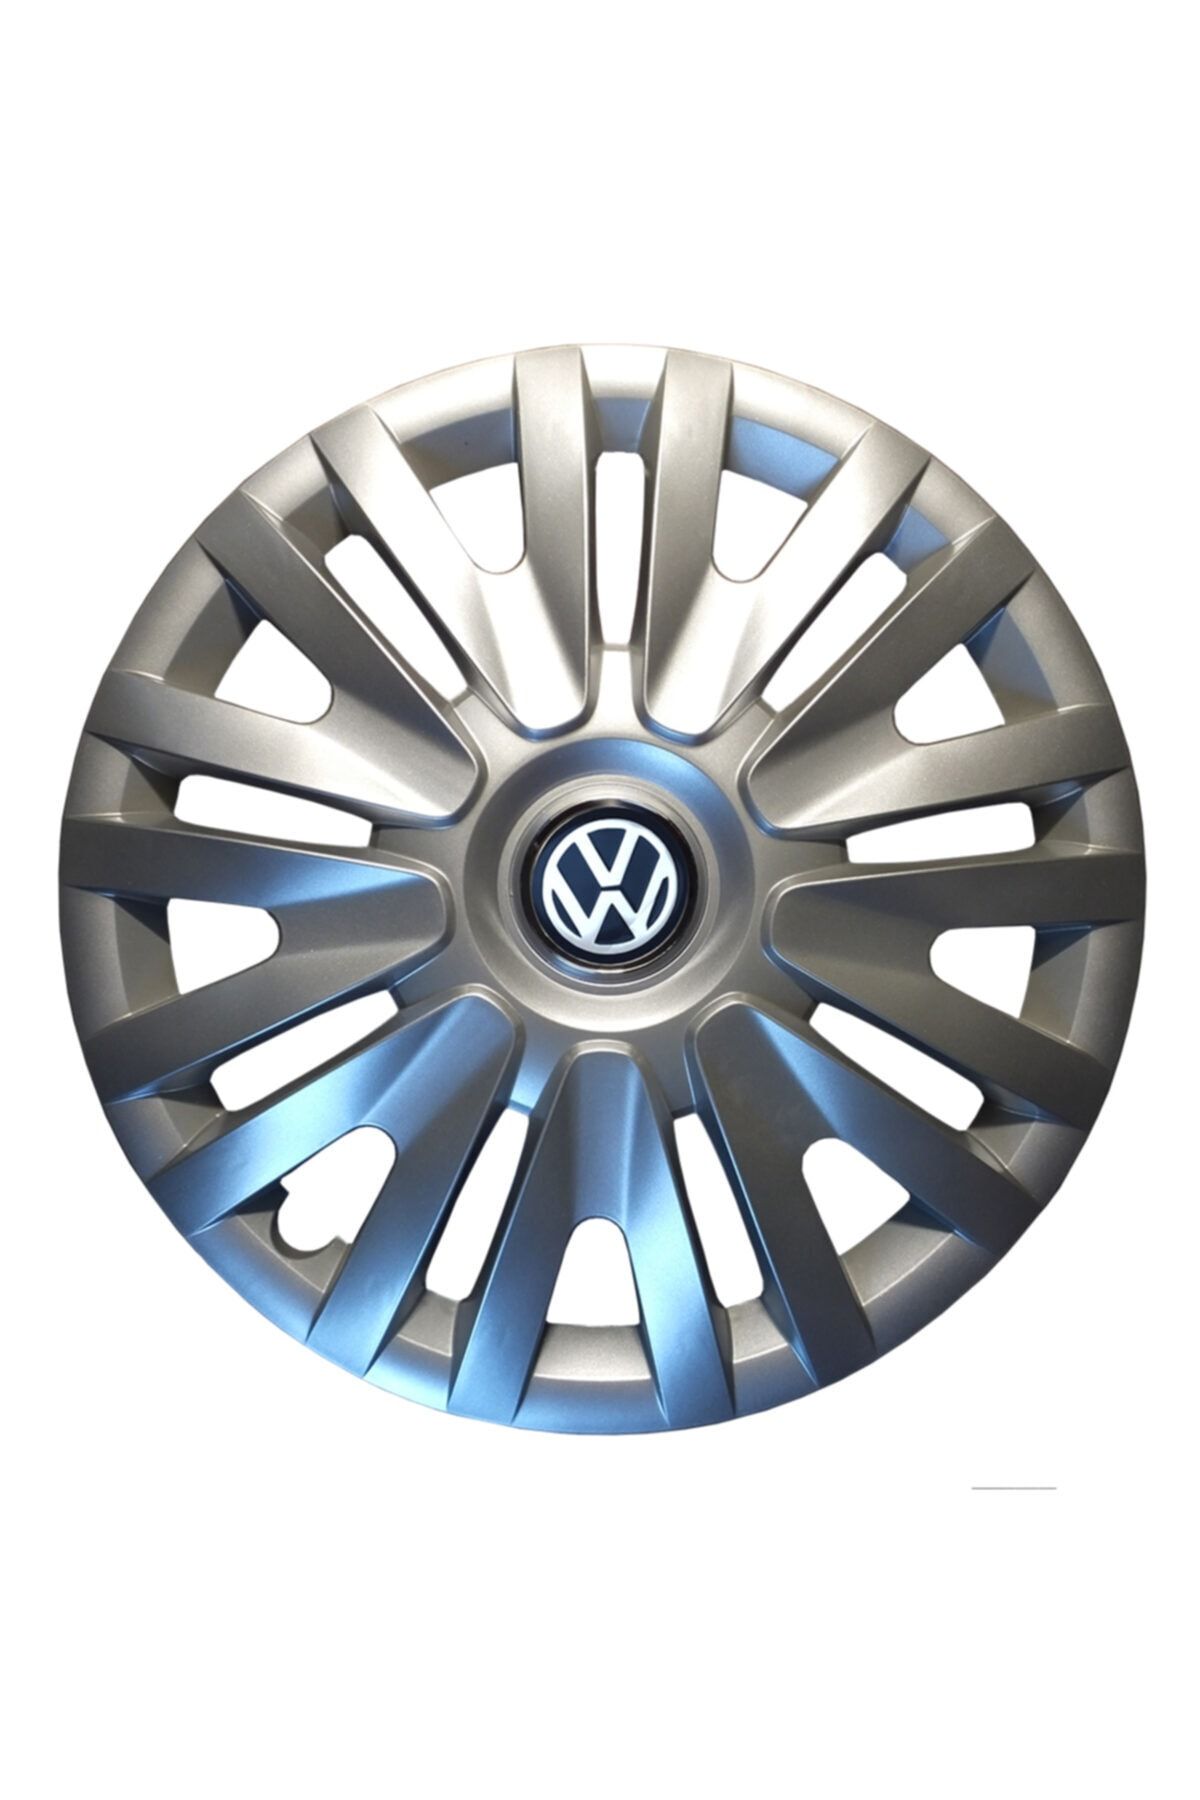 arkem Kırılmaz Volkswagen 15 Inç Jant Kapağı Takım 4 Adet